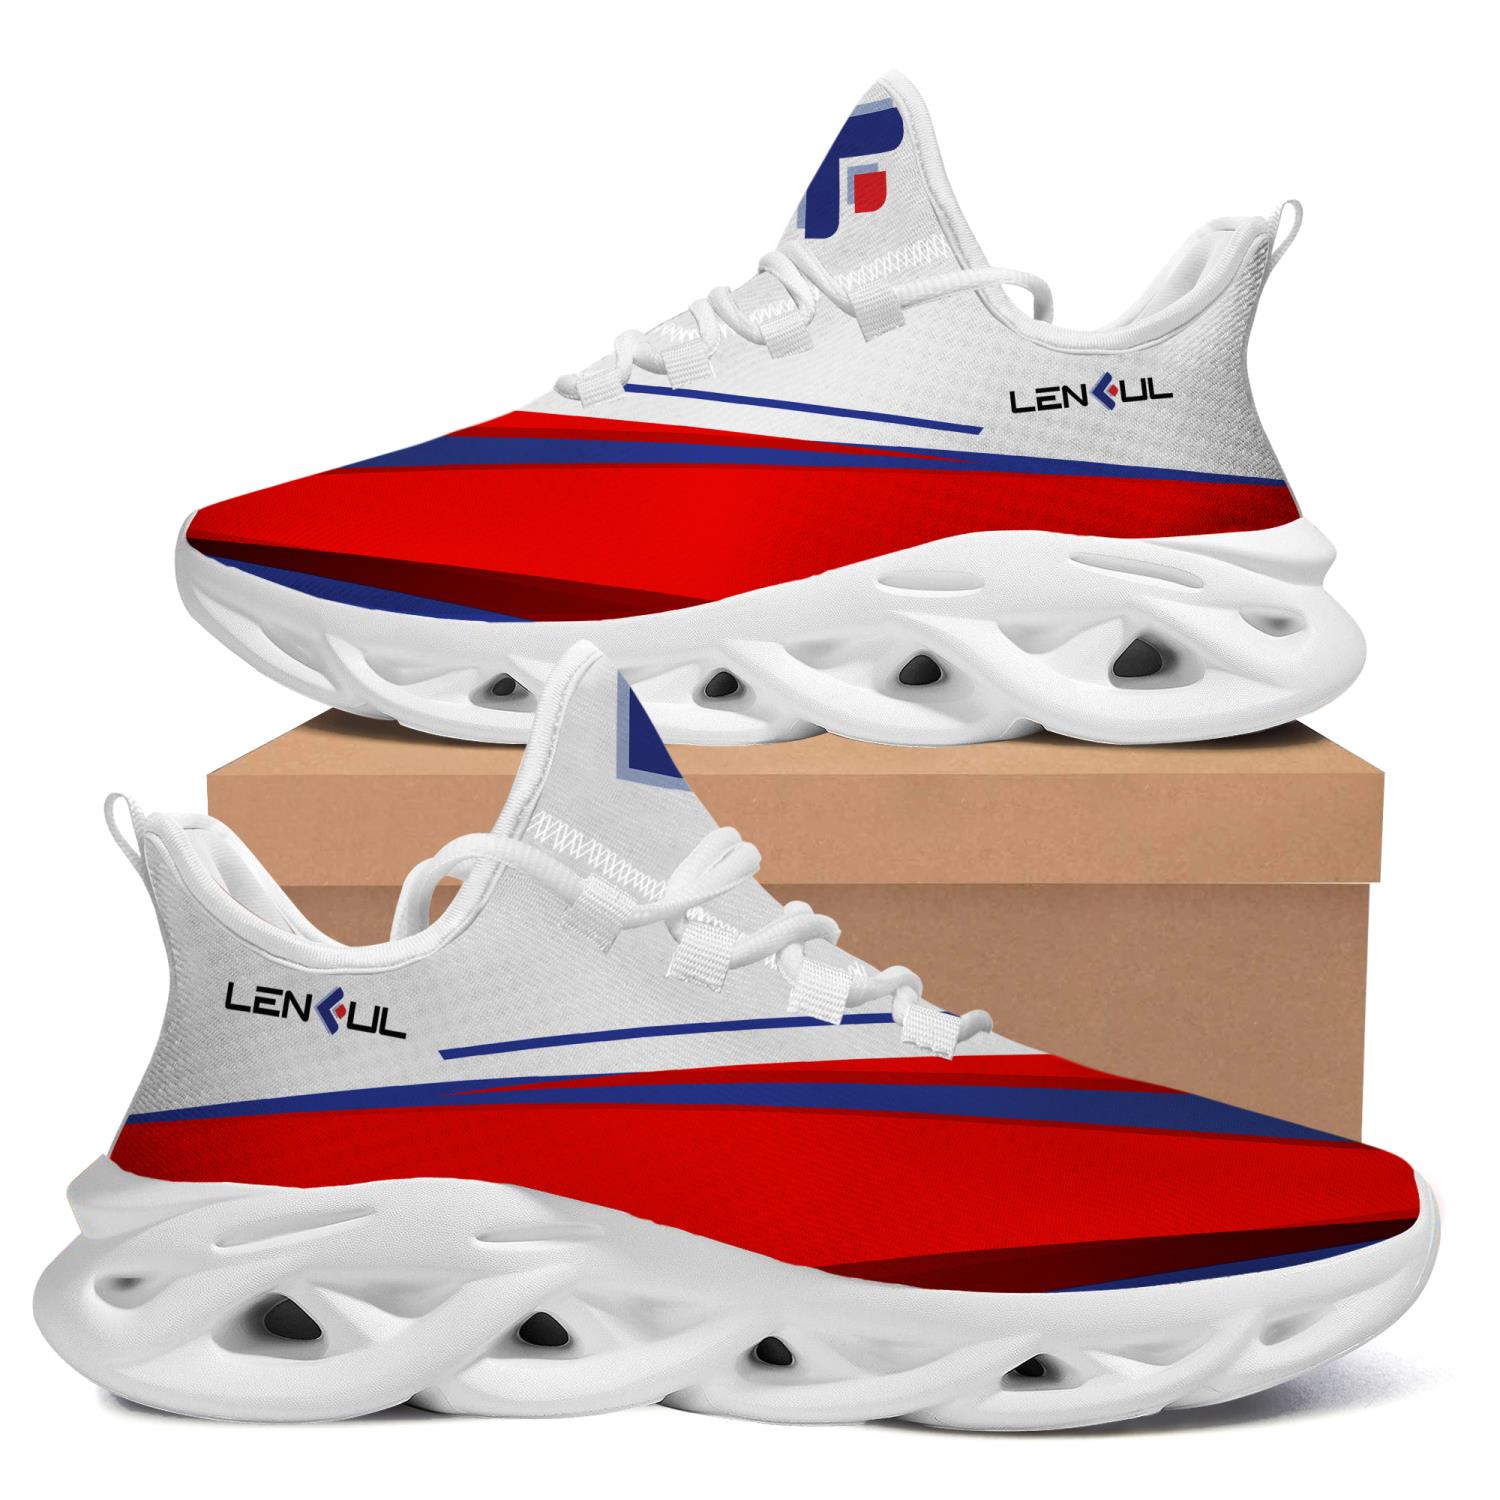 St louis cardinals max soul shoes l98 Max Soul Shoes - Inspire Uplift